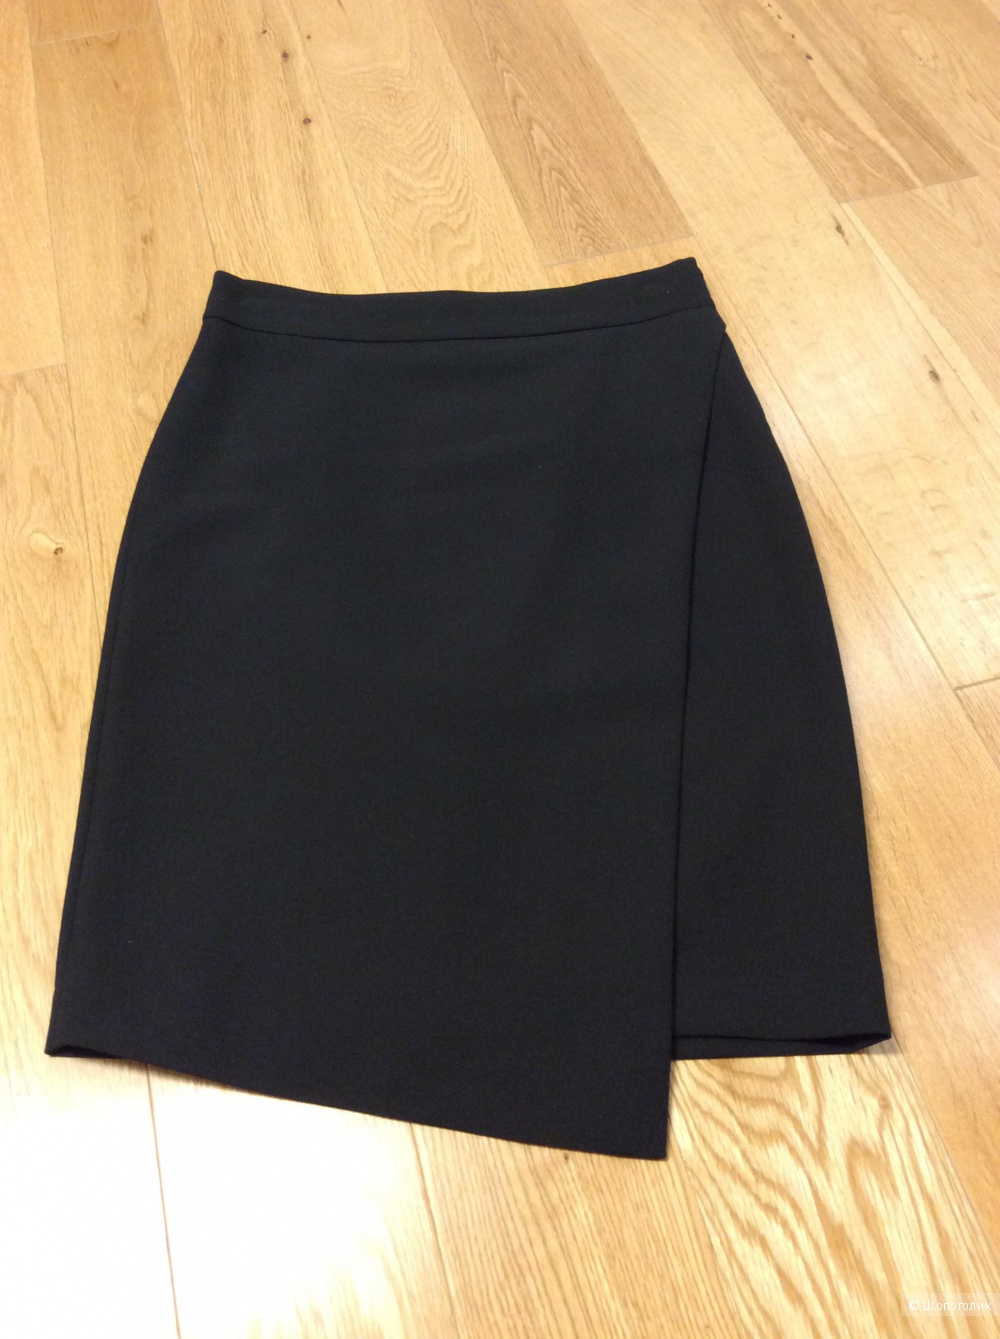 Черная юбка-карандаш ZARA р.М с оригинальной асимметричной имитацией запаха